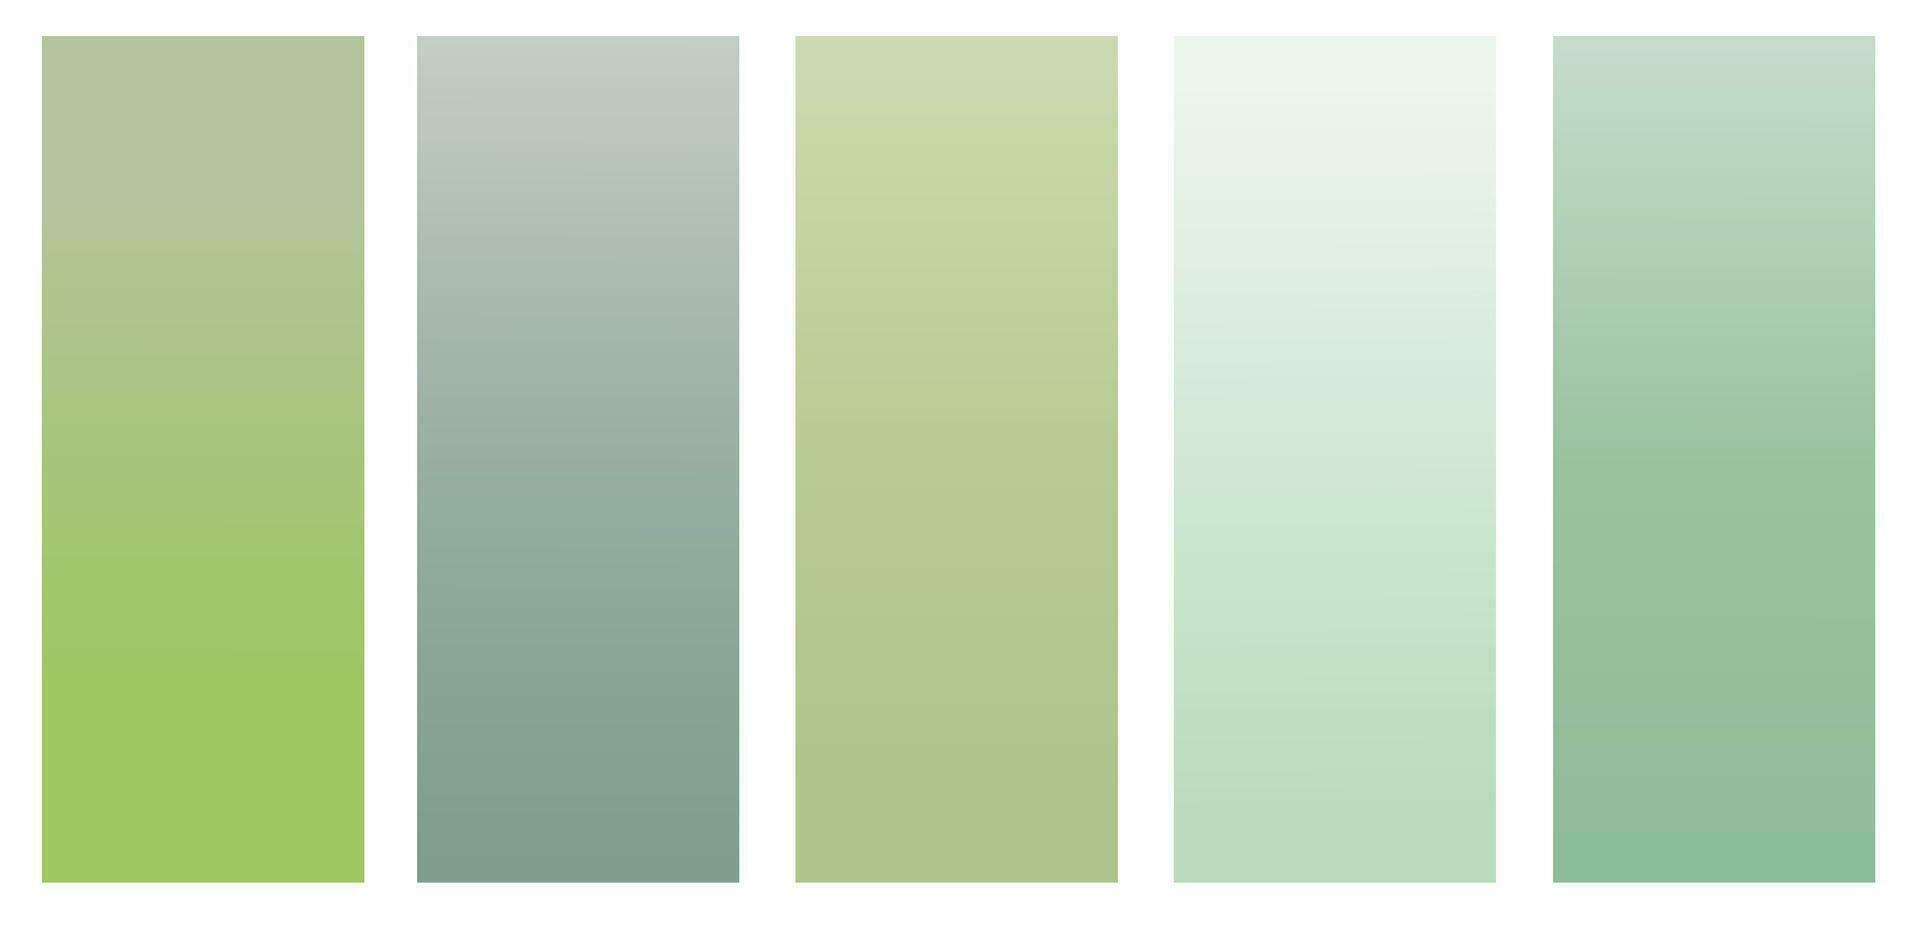 uppsättning av gradienter ljus, slät, pastell lutning färger mönster för enheter, datorer och modern smartphone skärm bakgrunder. vektor illustration.